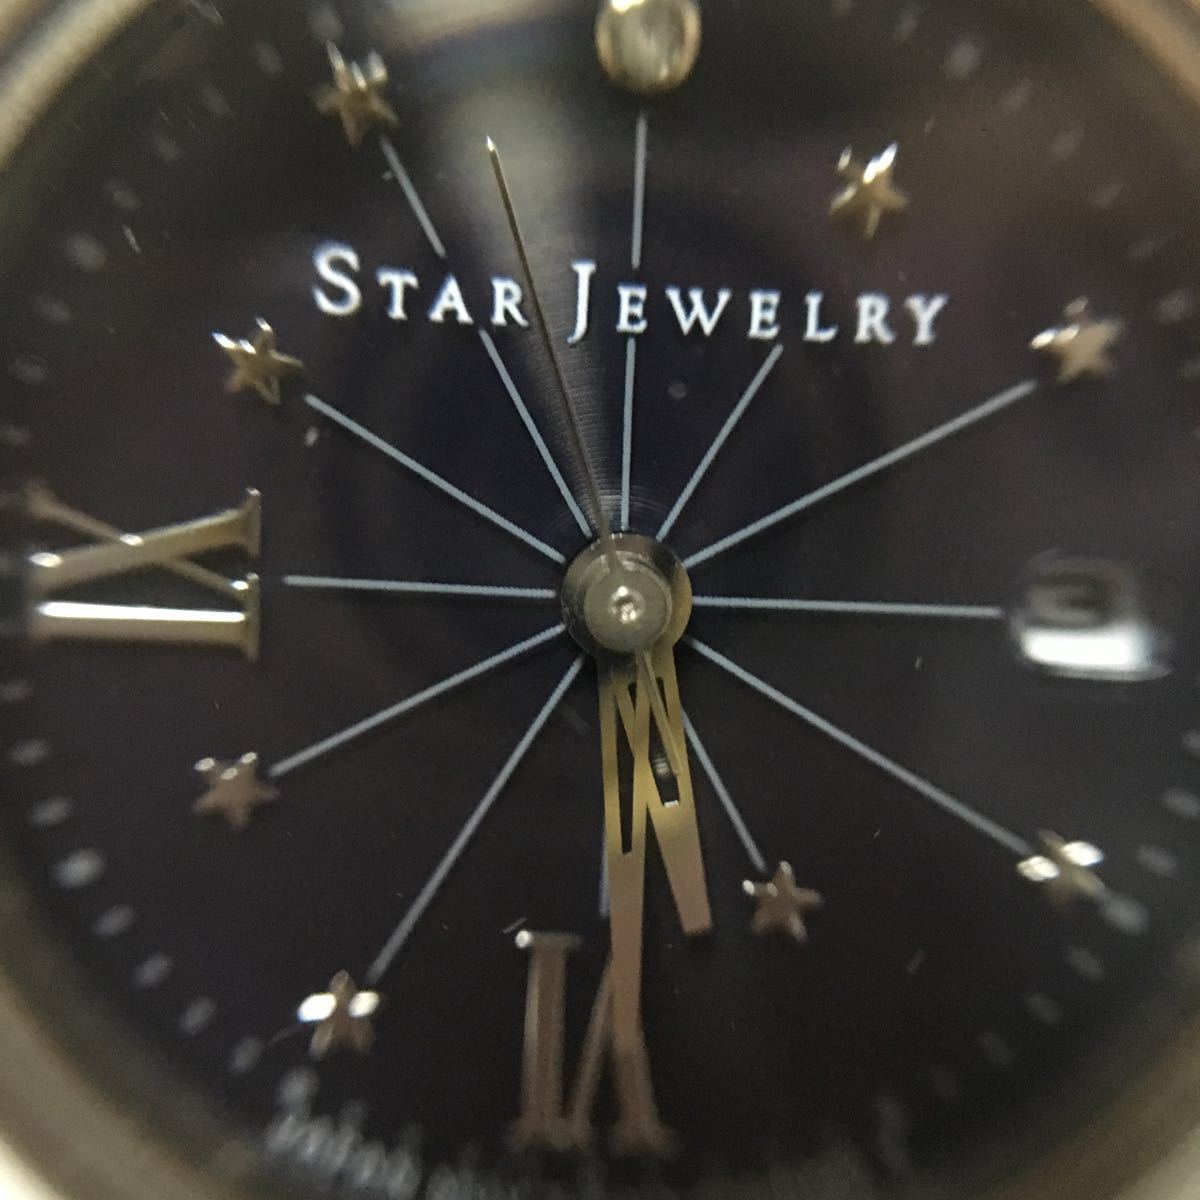  Star Jewelry наручные часы eko прекрасный товар кейс * стекло заменен 